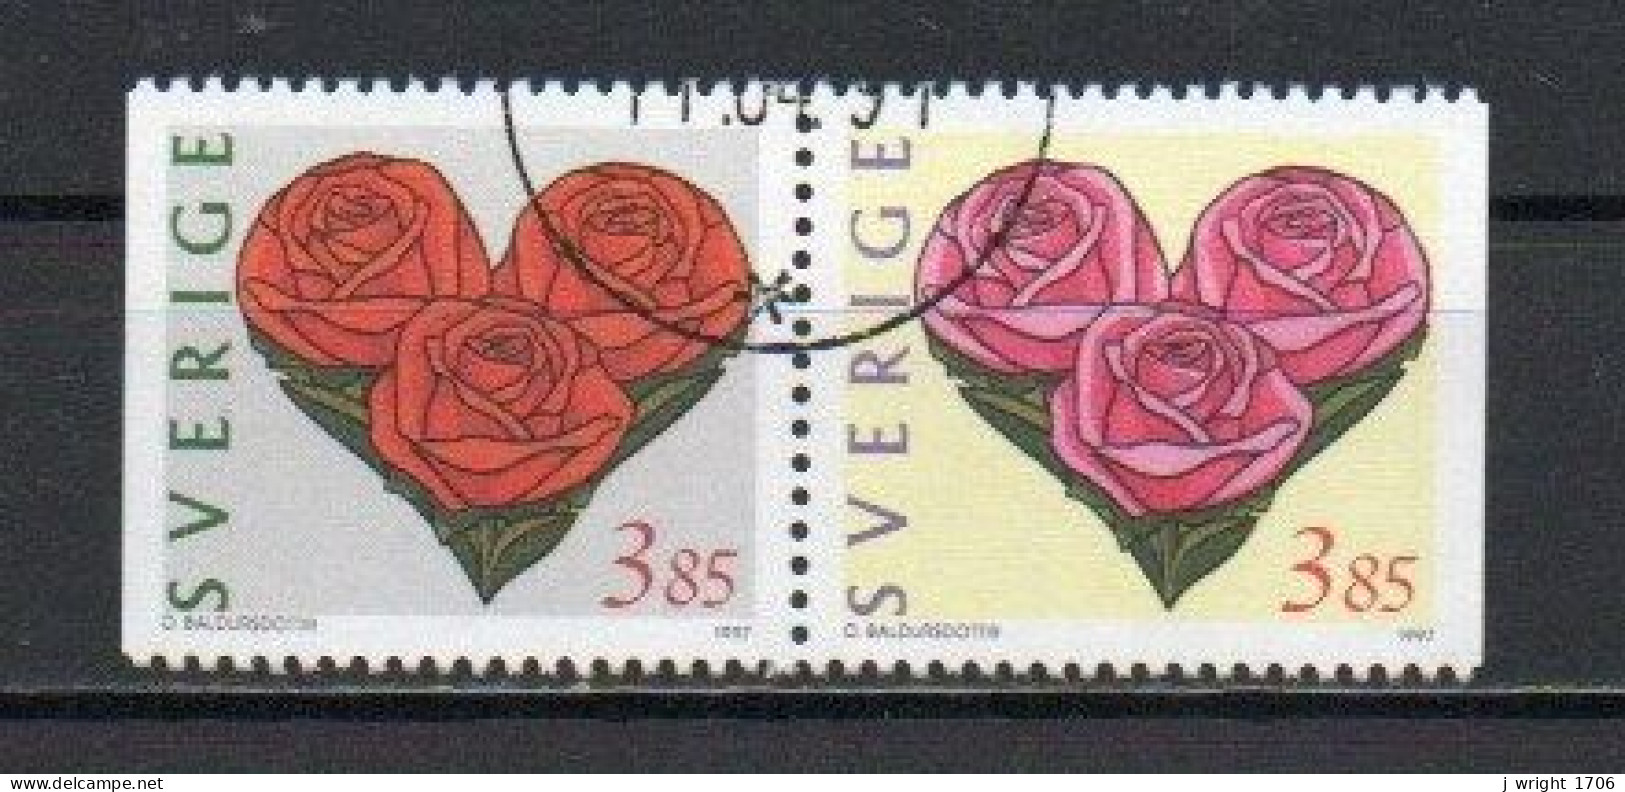 Sweden, 1997, Greetings Stamps, Set/Joined Pair, USED - Gebruikt